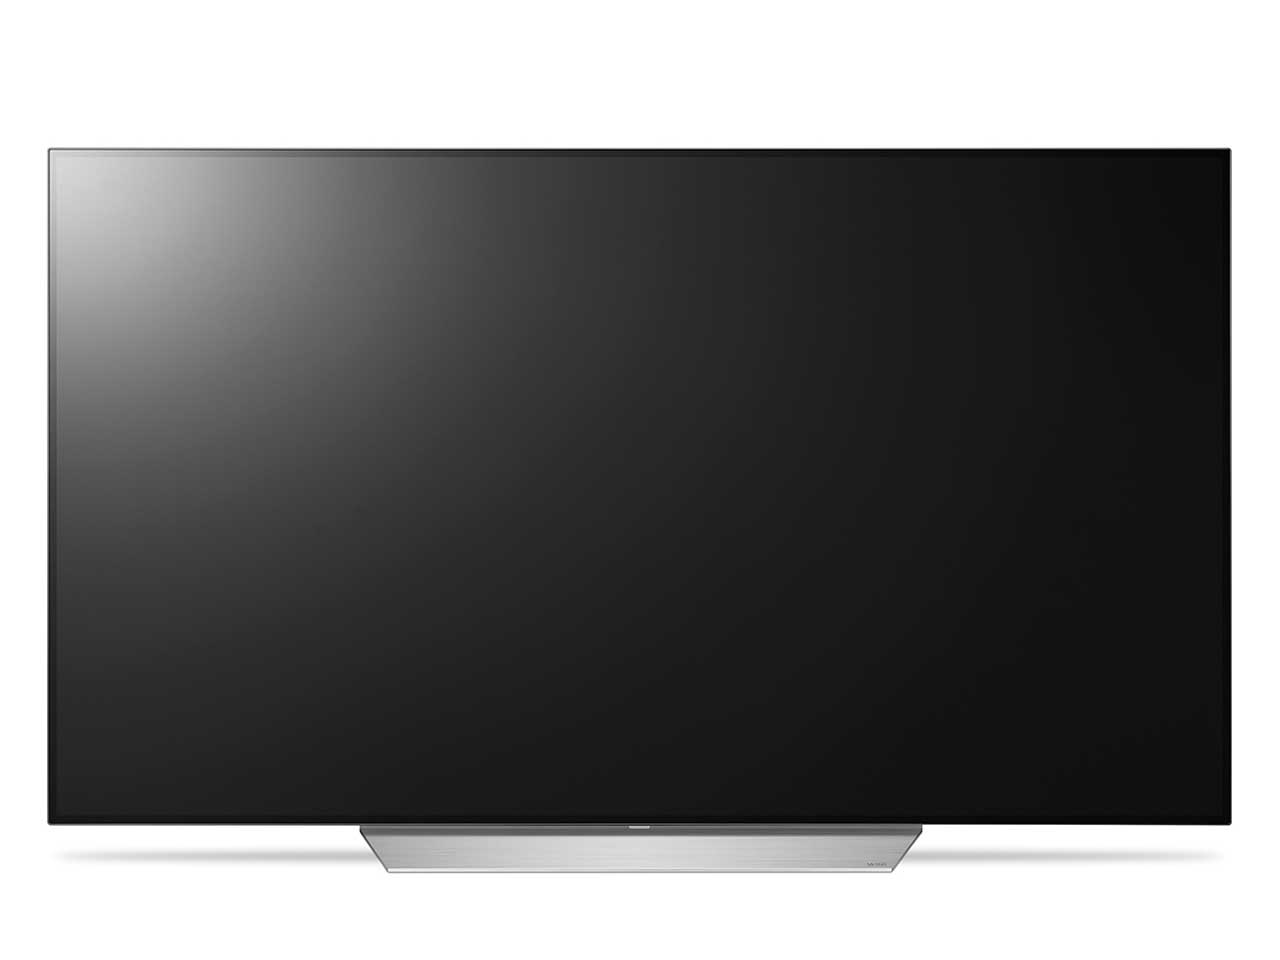  液晶テレビ OLED55C7P